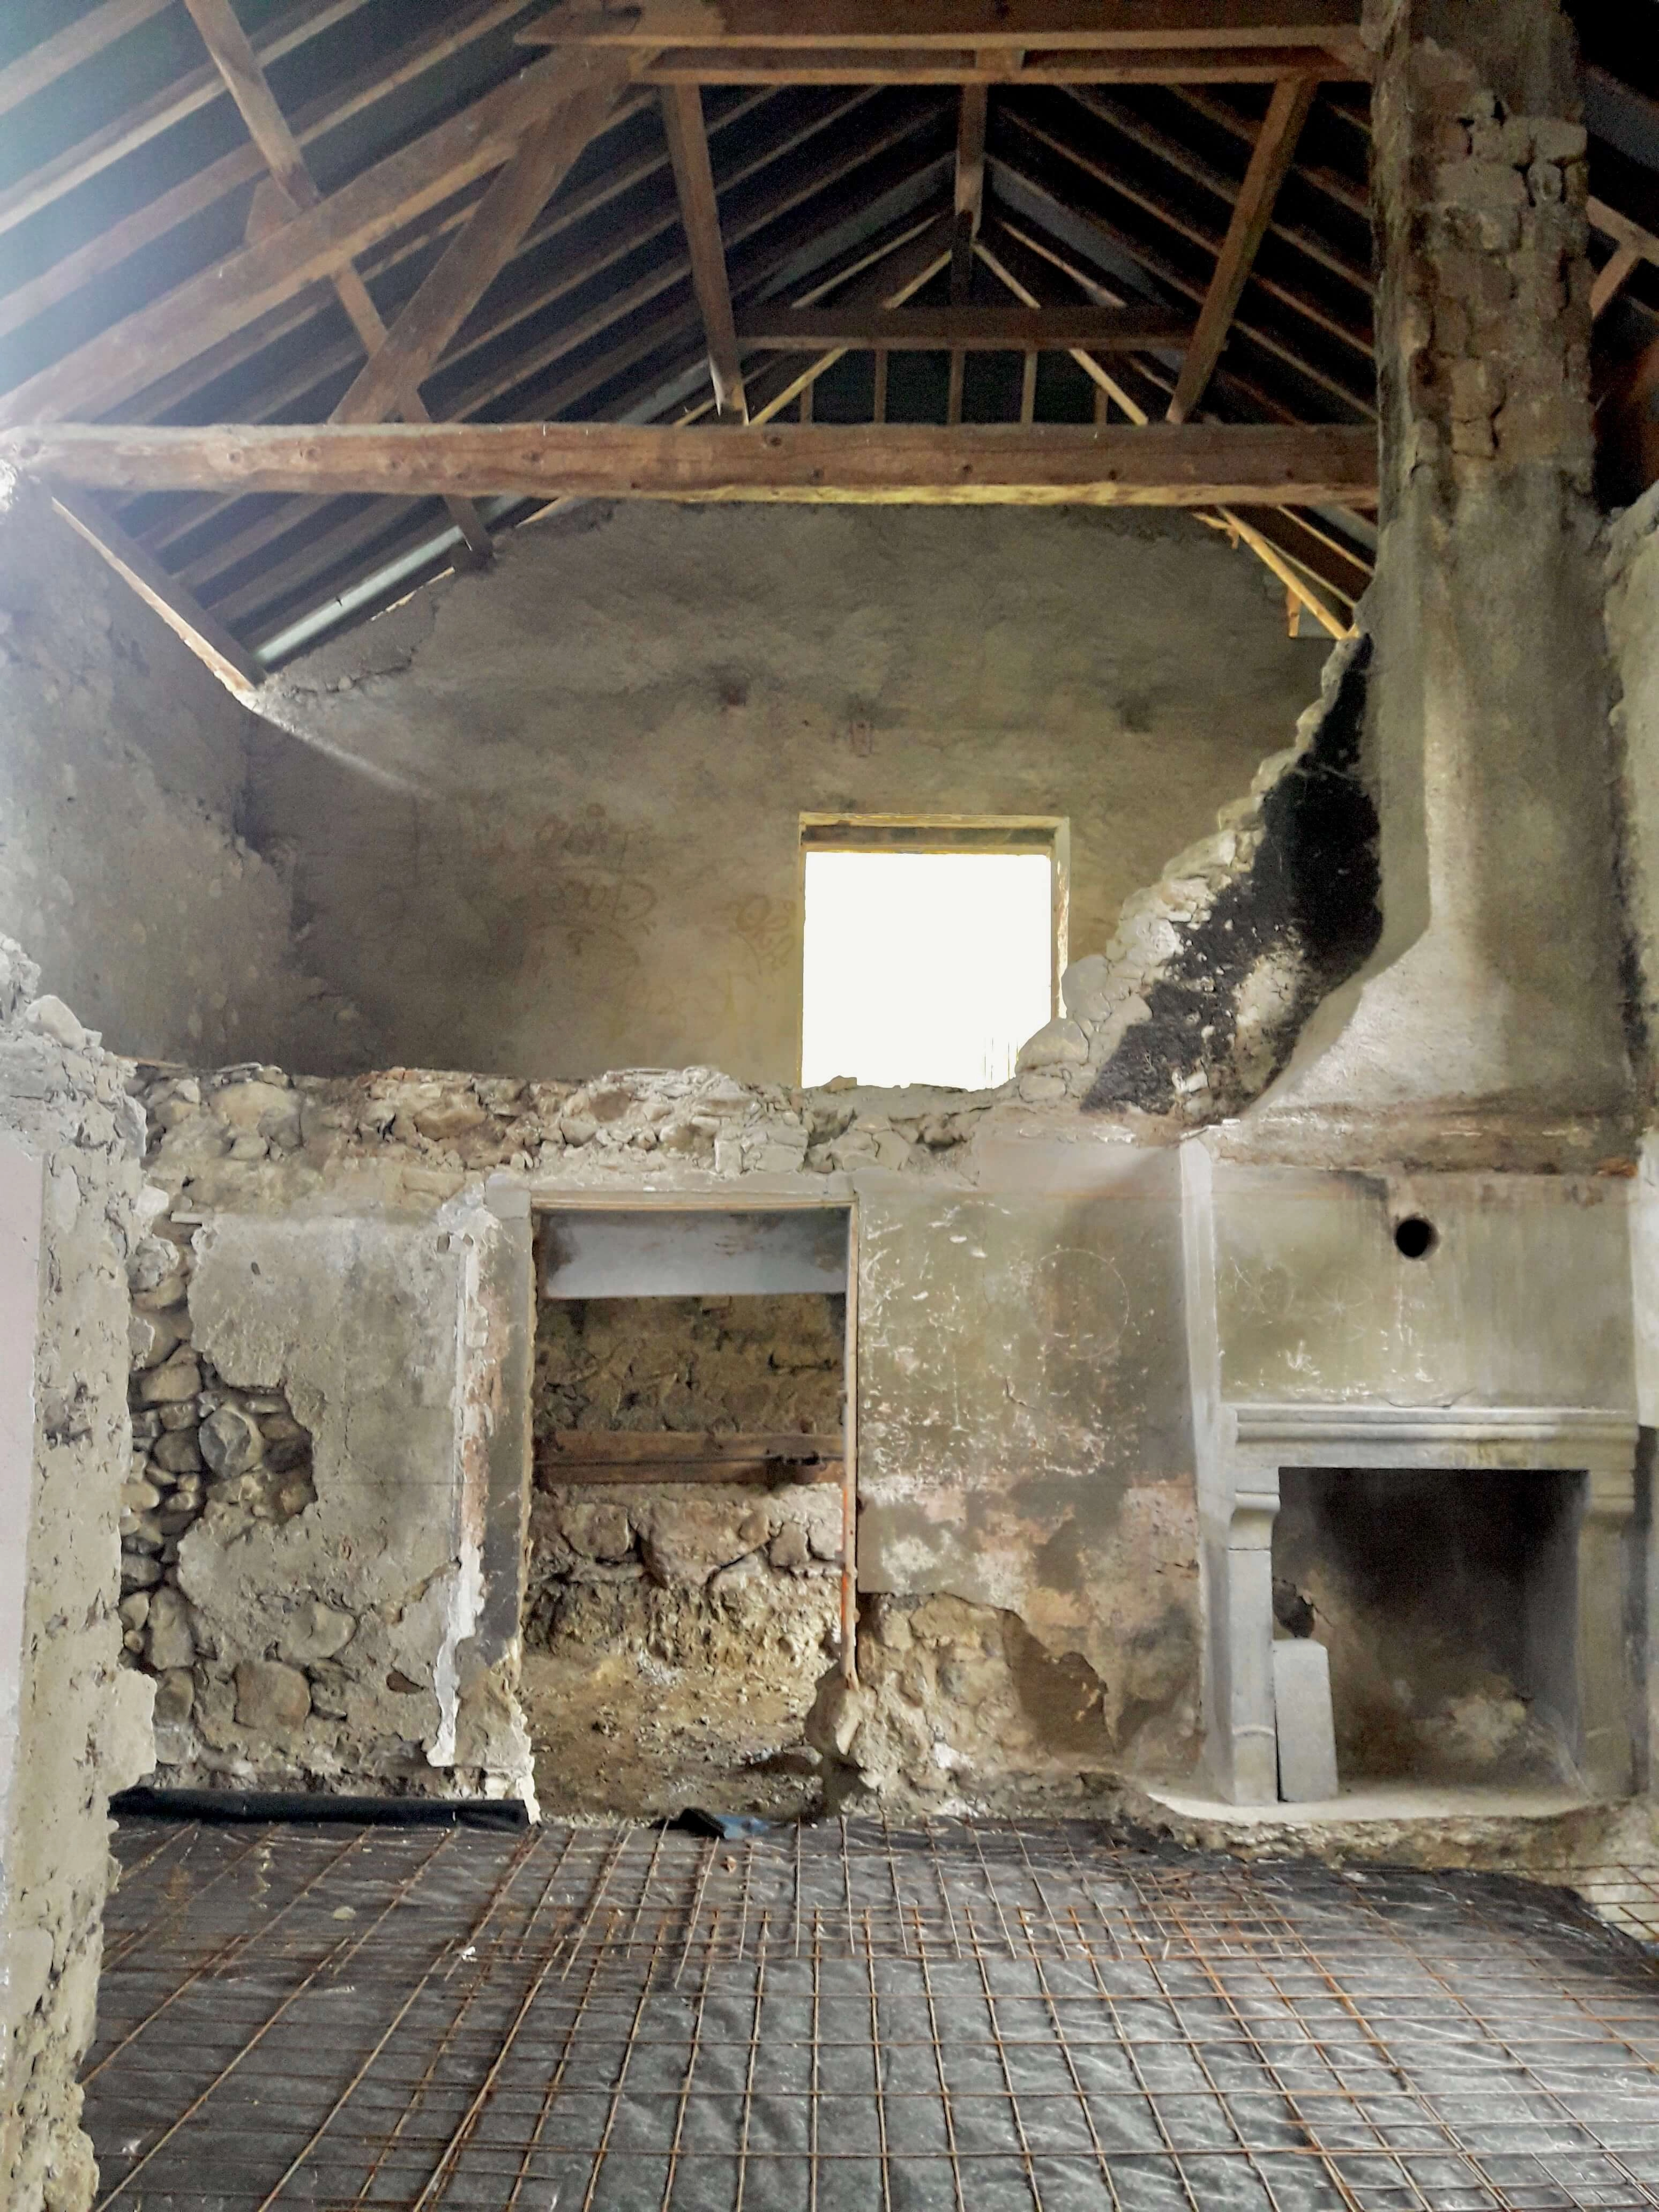 démolition complète ferme dalle réhabilitation ferme apparente cheminée